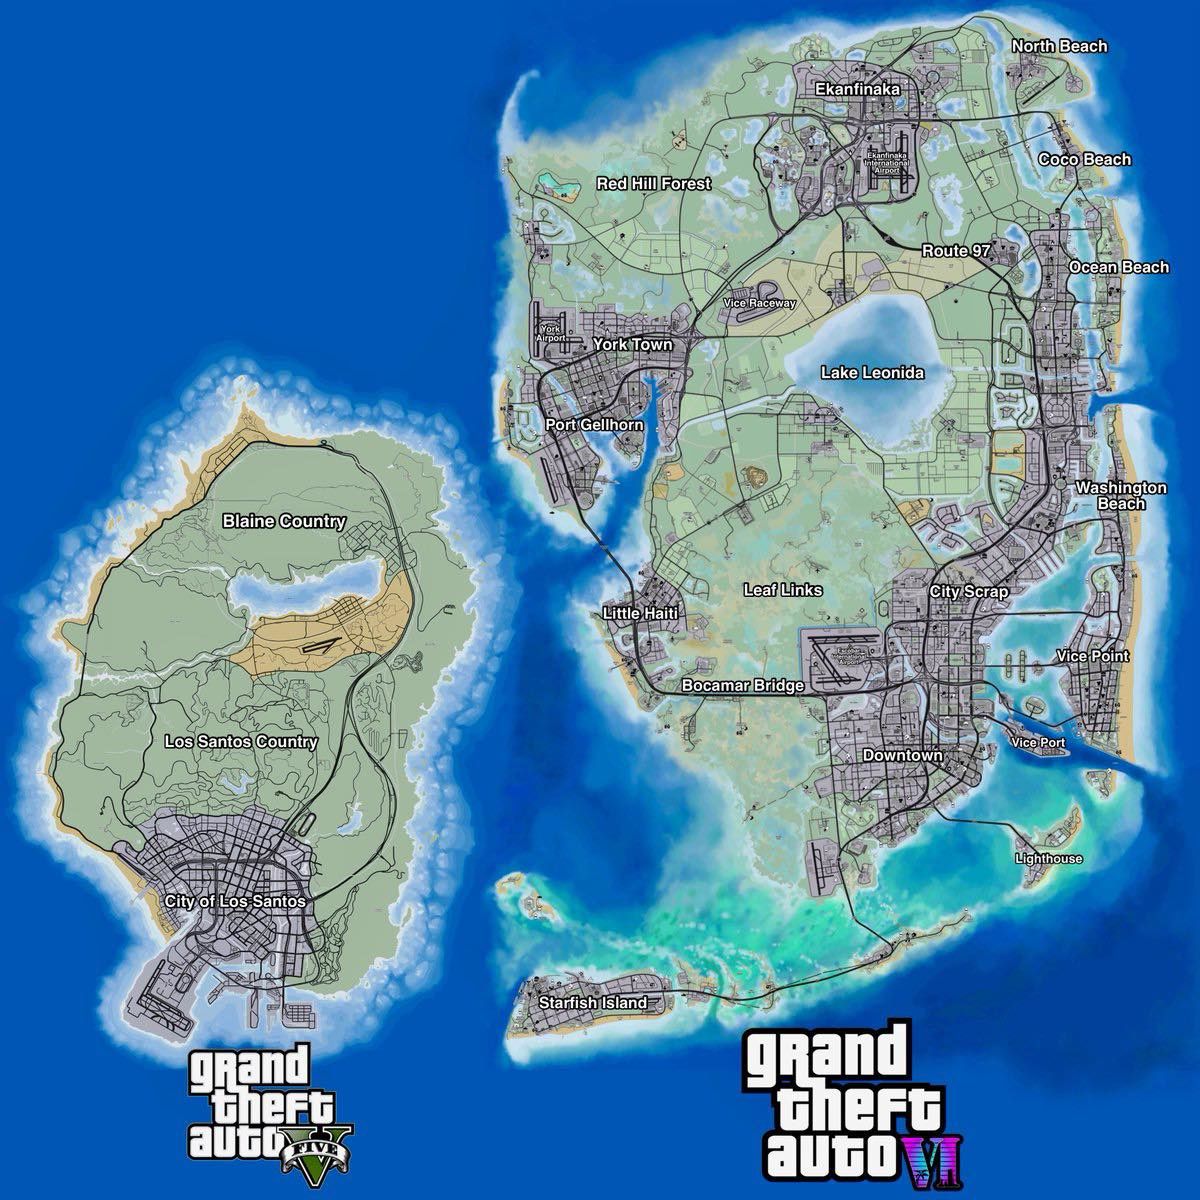 Sızdırılan GTA 6 haritası, GTA 5'ten iki kat büyük olduğunu gösteriyor